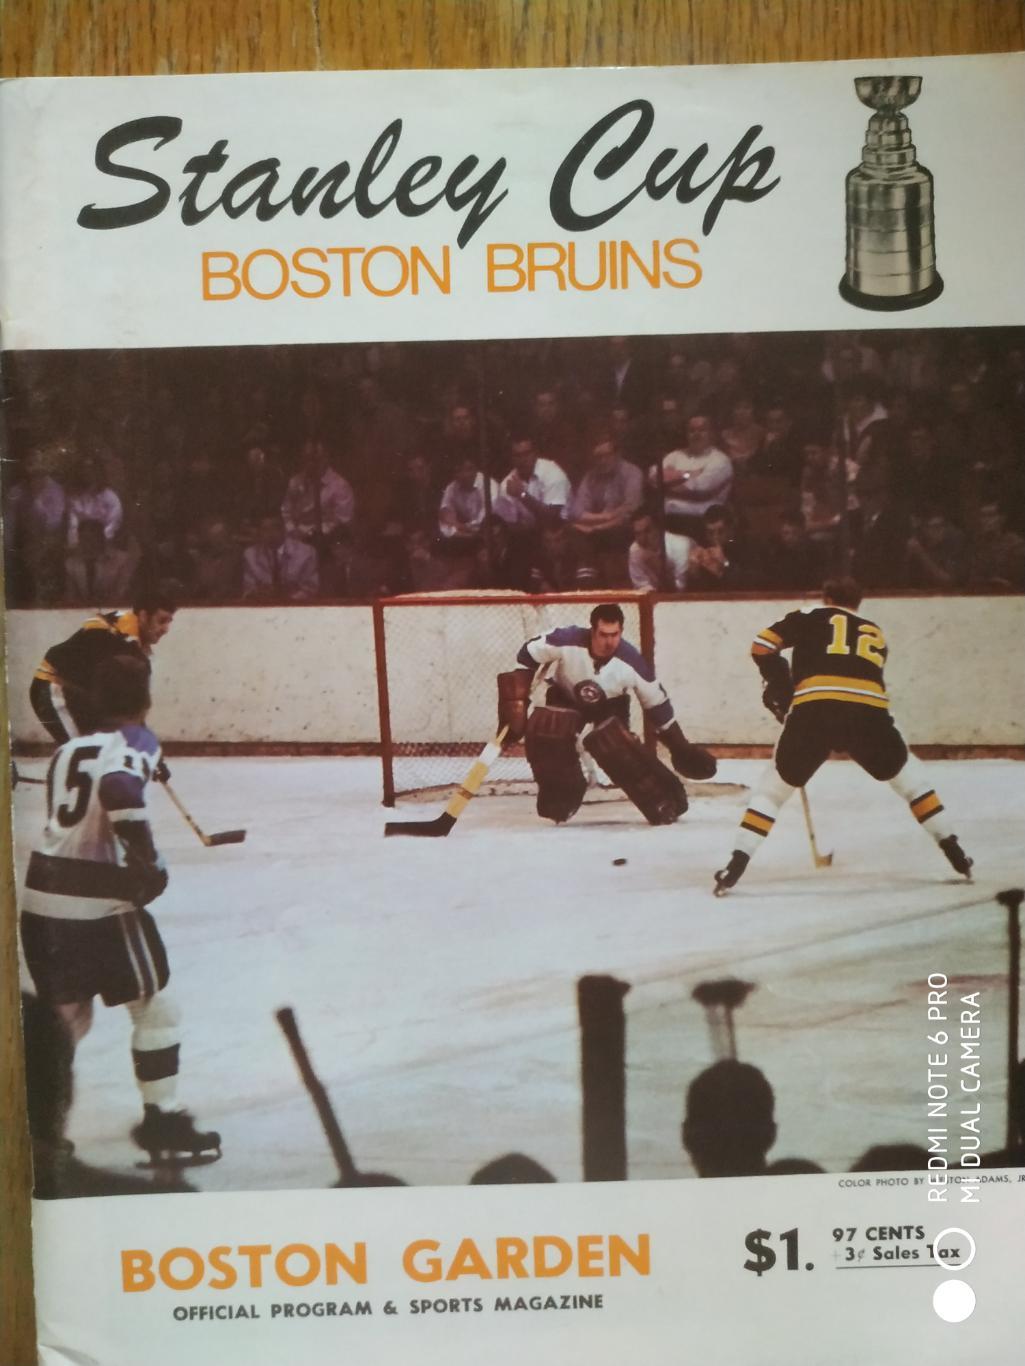 ПРОГРАММА МАТЧА НХЛ NHL 1971 FEB.9 BRUINS VS. RANGERS STANLEY CUP GAME PROGRAM